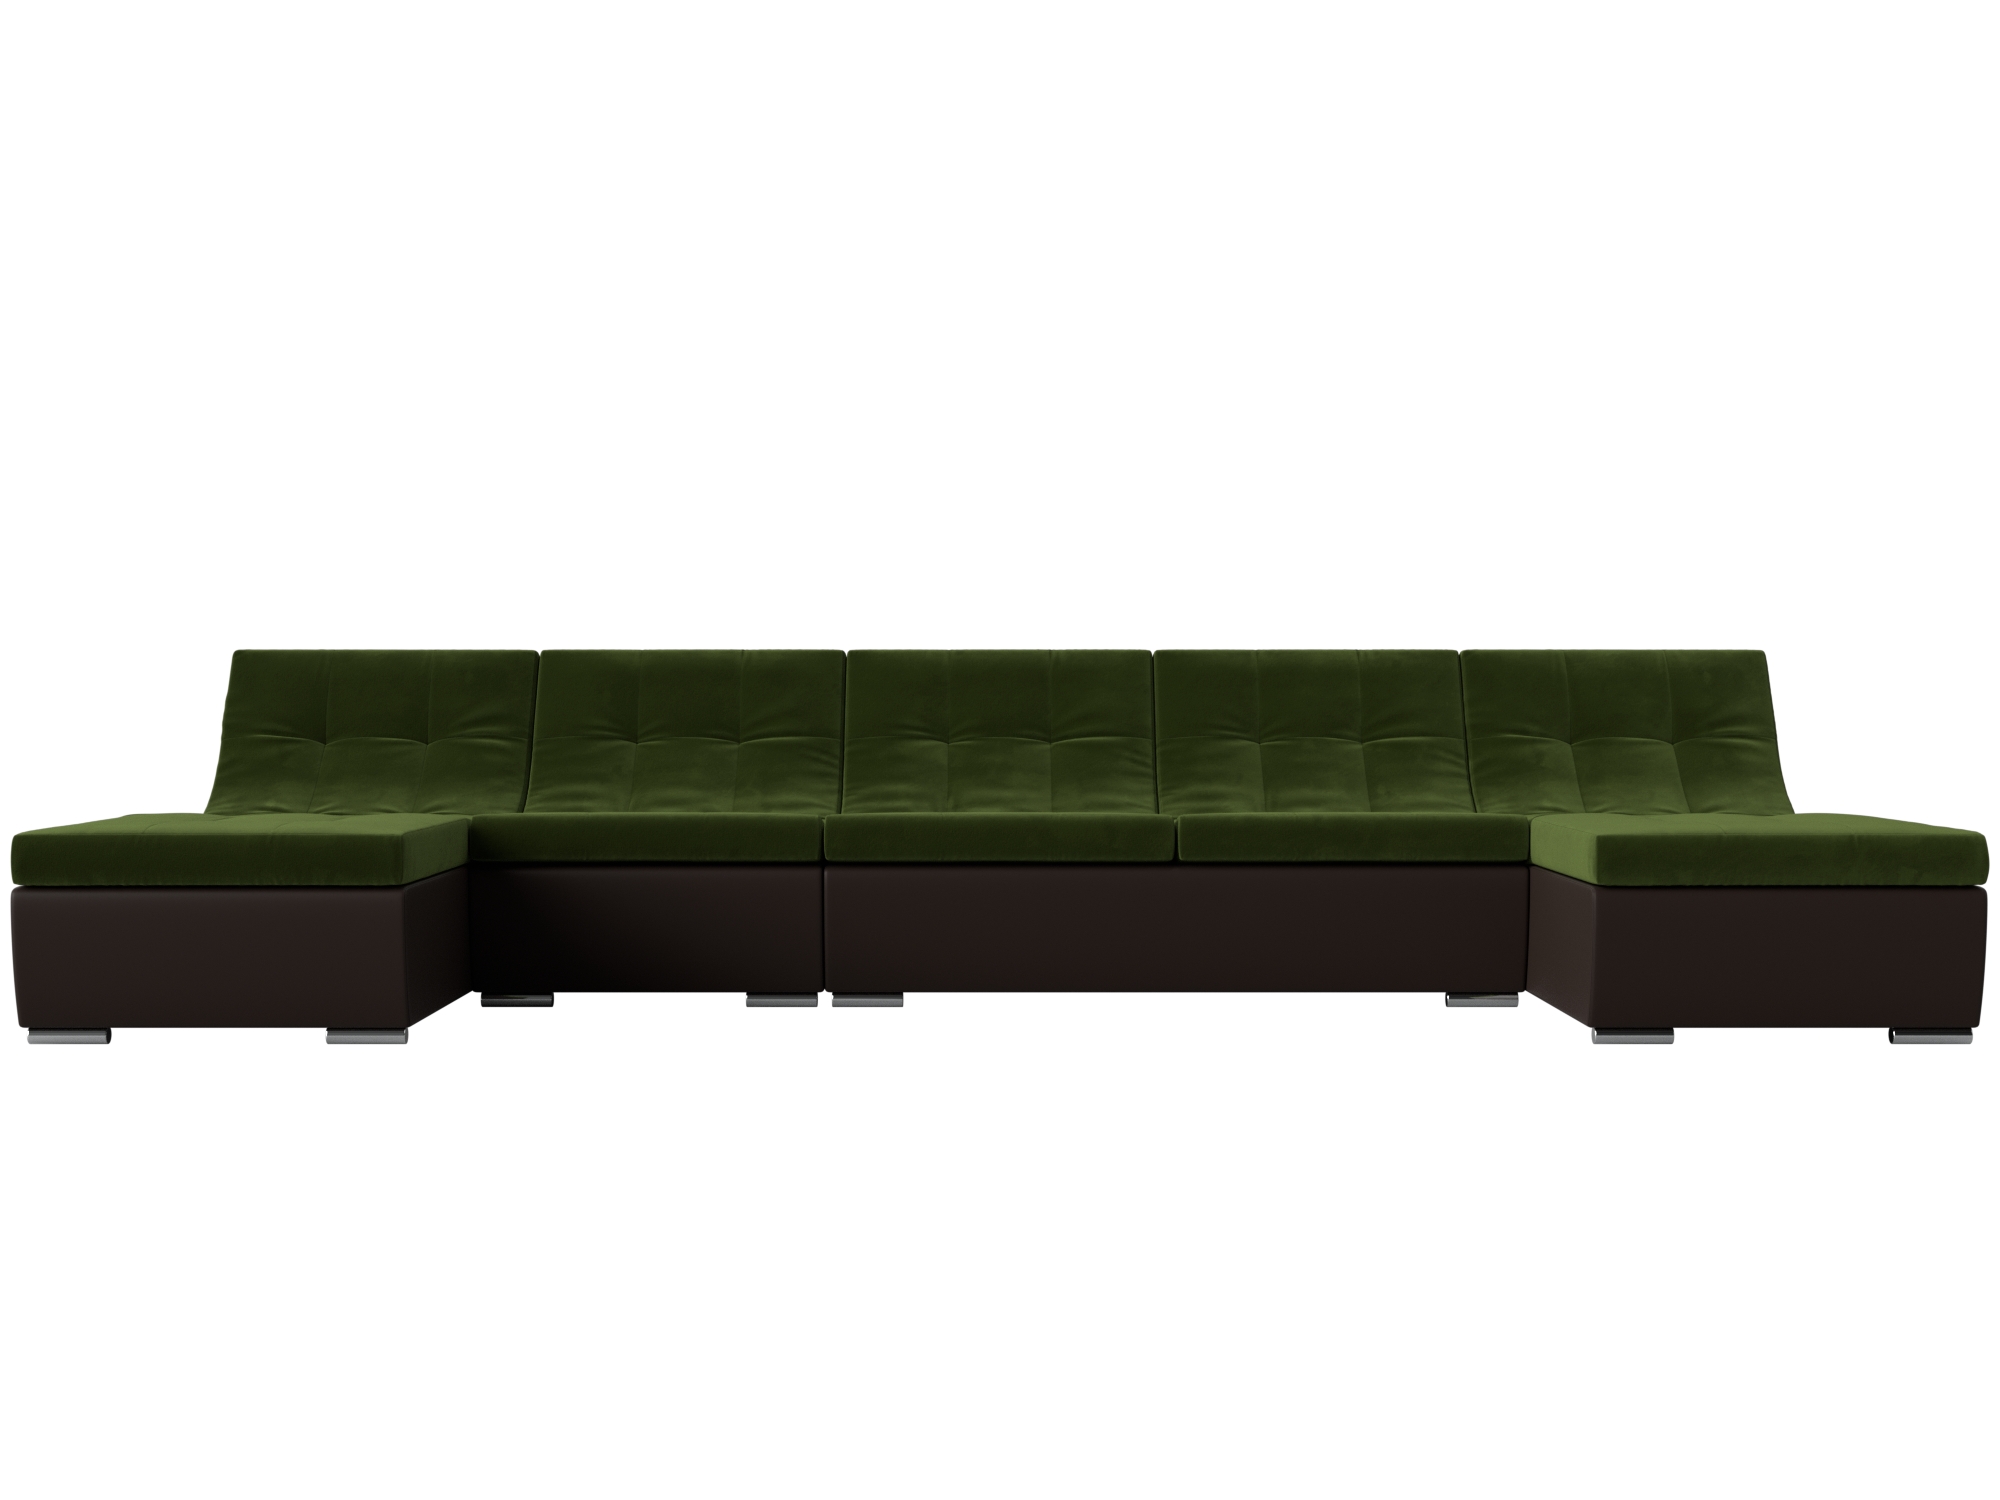 П-образный модульный диван Монреаль Long MebelVia Зеленый, Коричневый, Микровельвет, Экокожа, ЛДСП диван п образный валенсия п mebelvia зеленый микровельвет лдсп